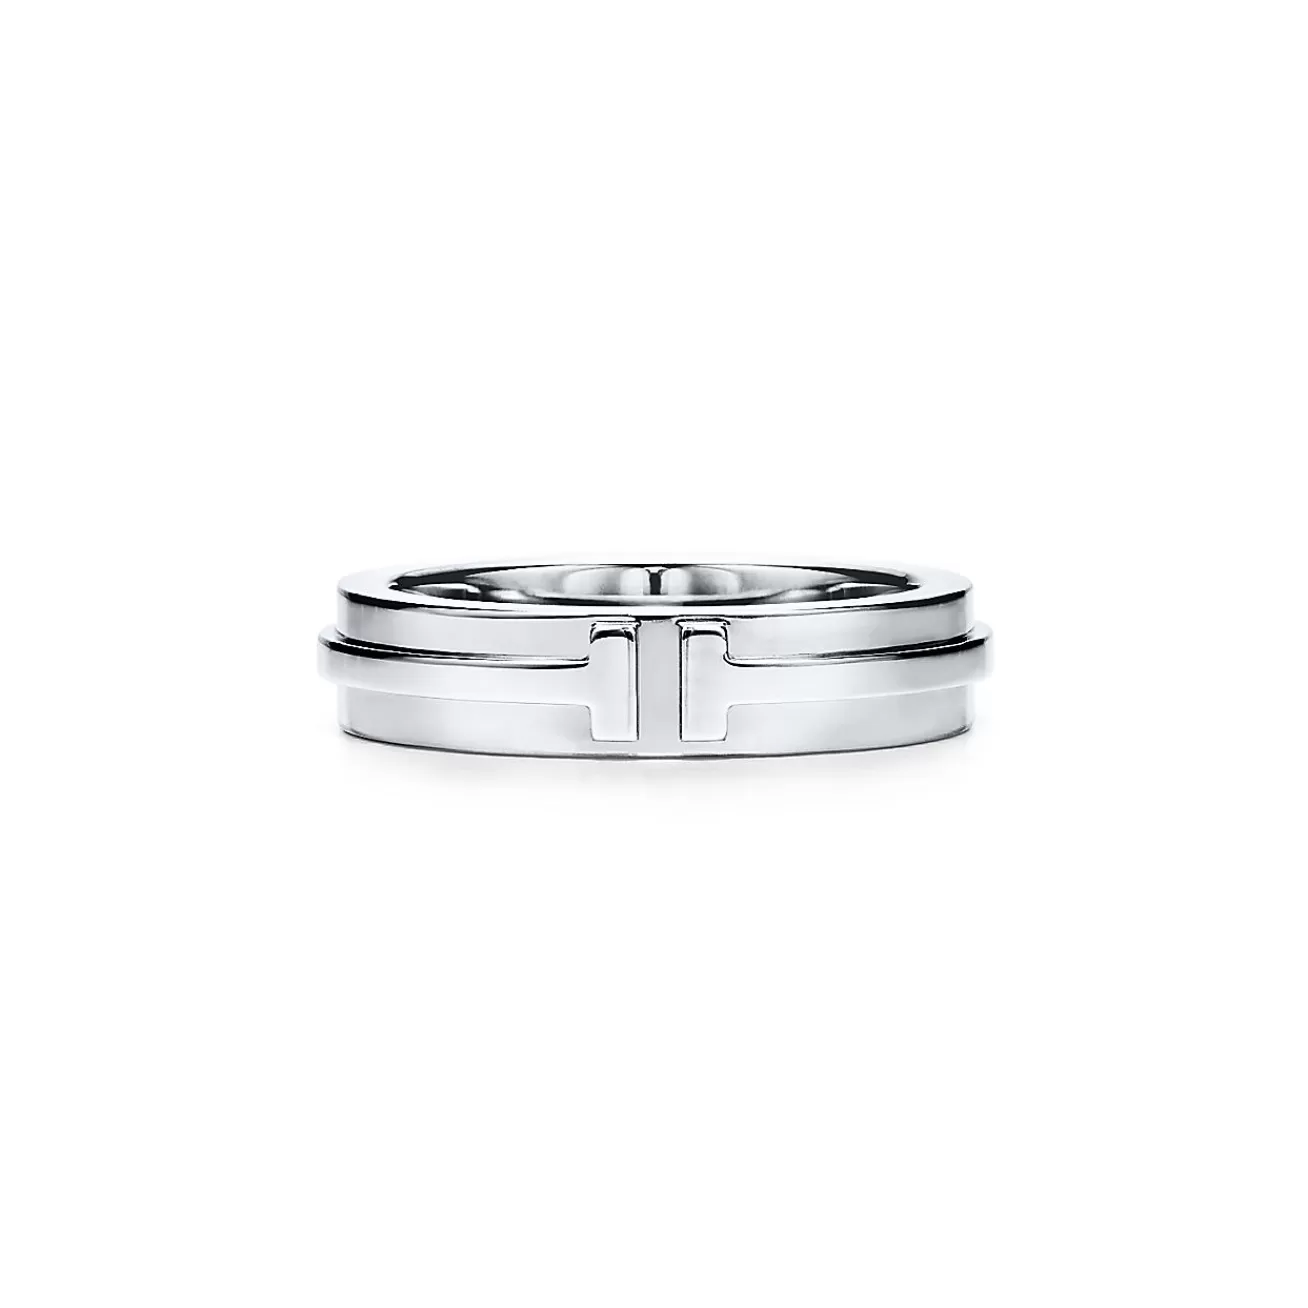 Tiffany & Co. Tiffany T narrow ring in 18k white gold, 4.5 mm wide. | ^Women Rings | Men's Jewelry